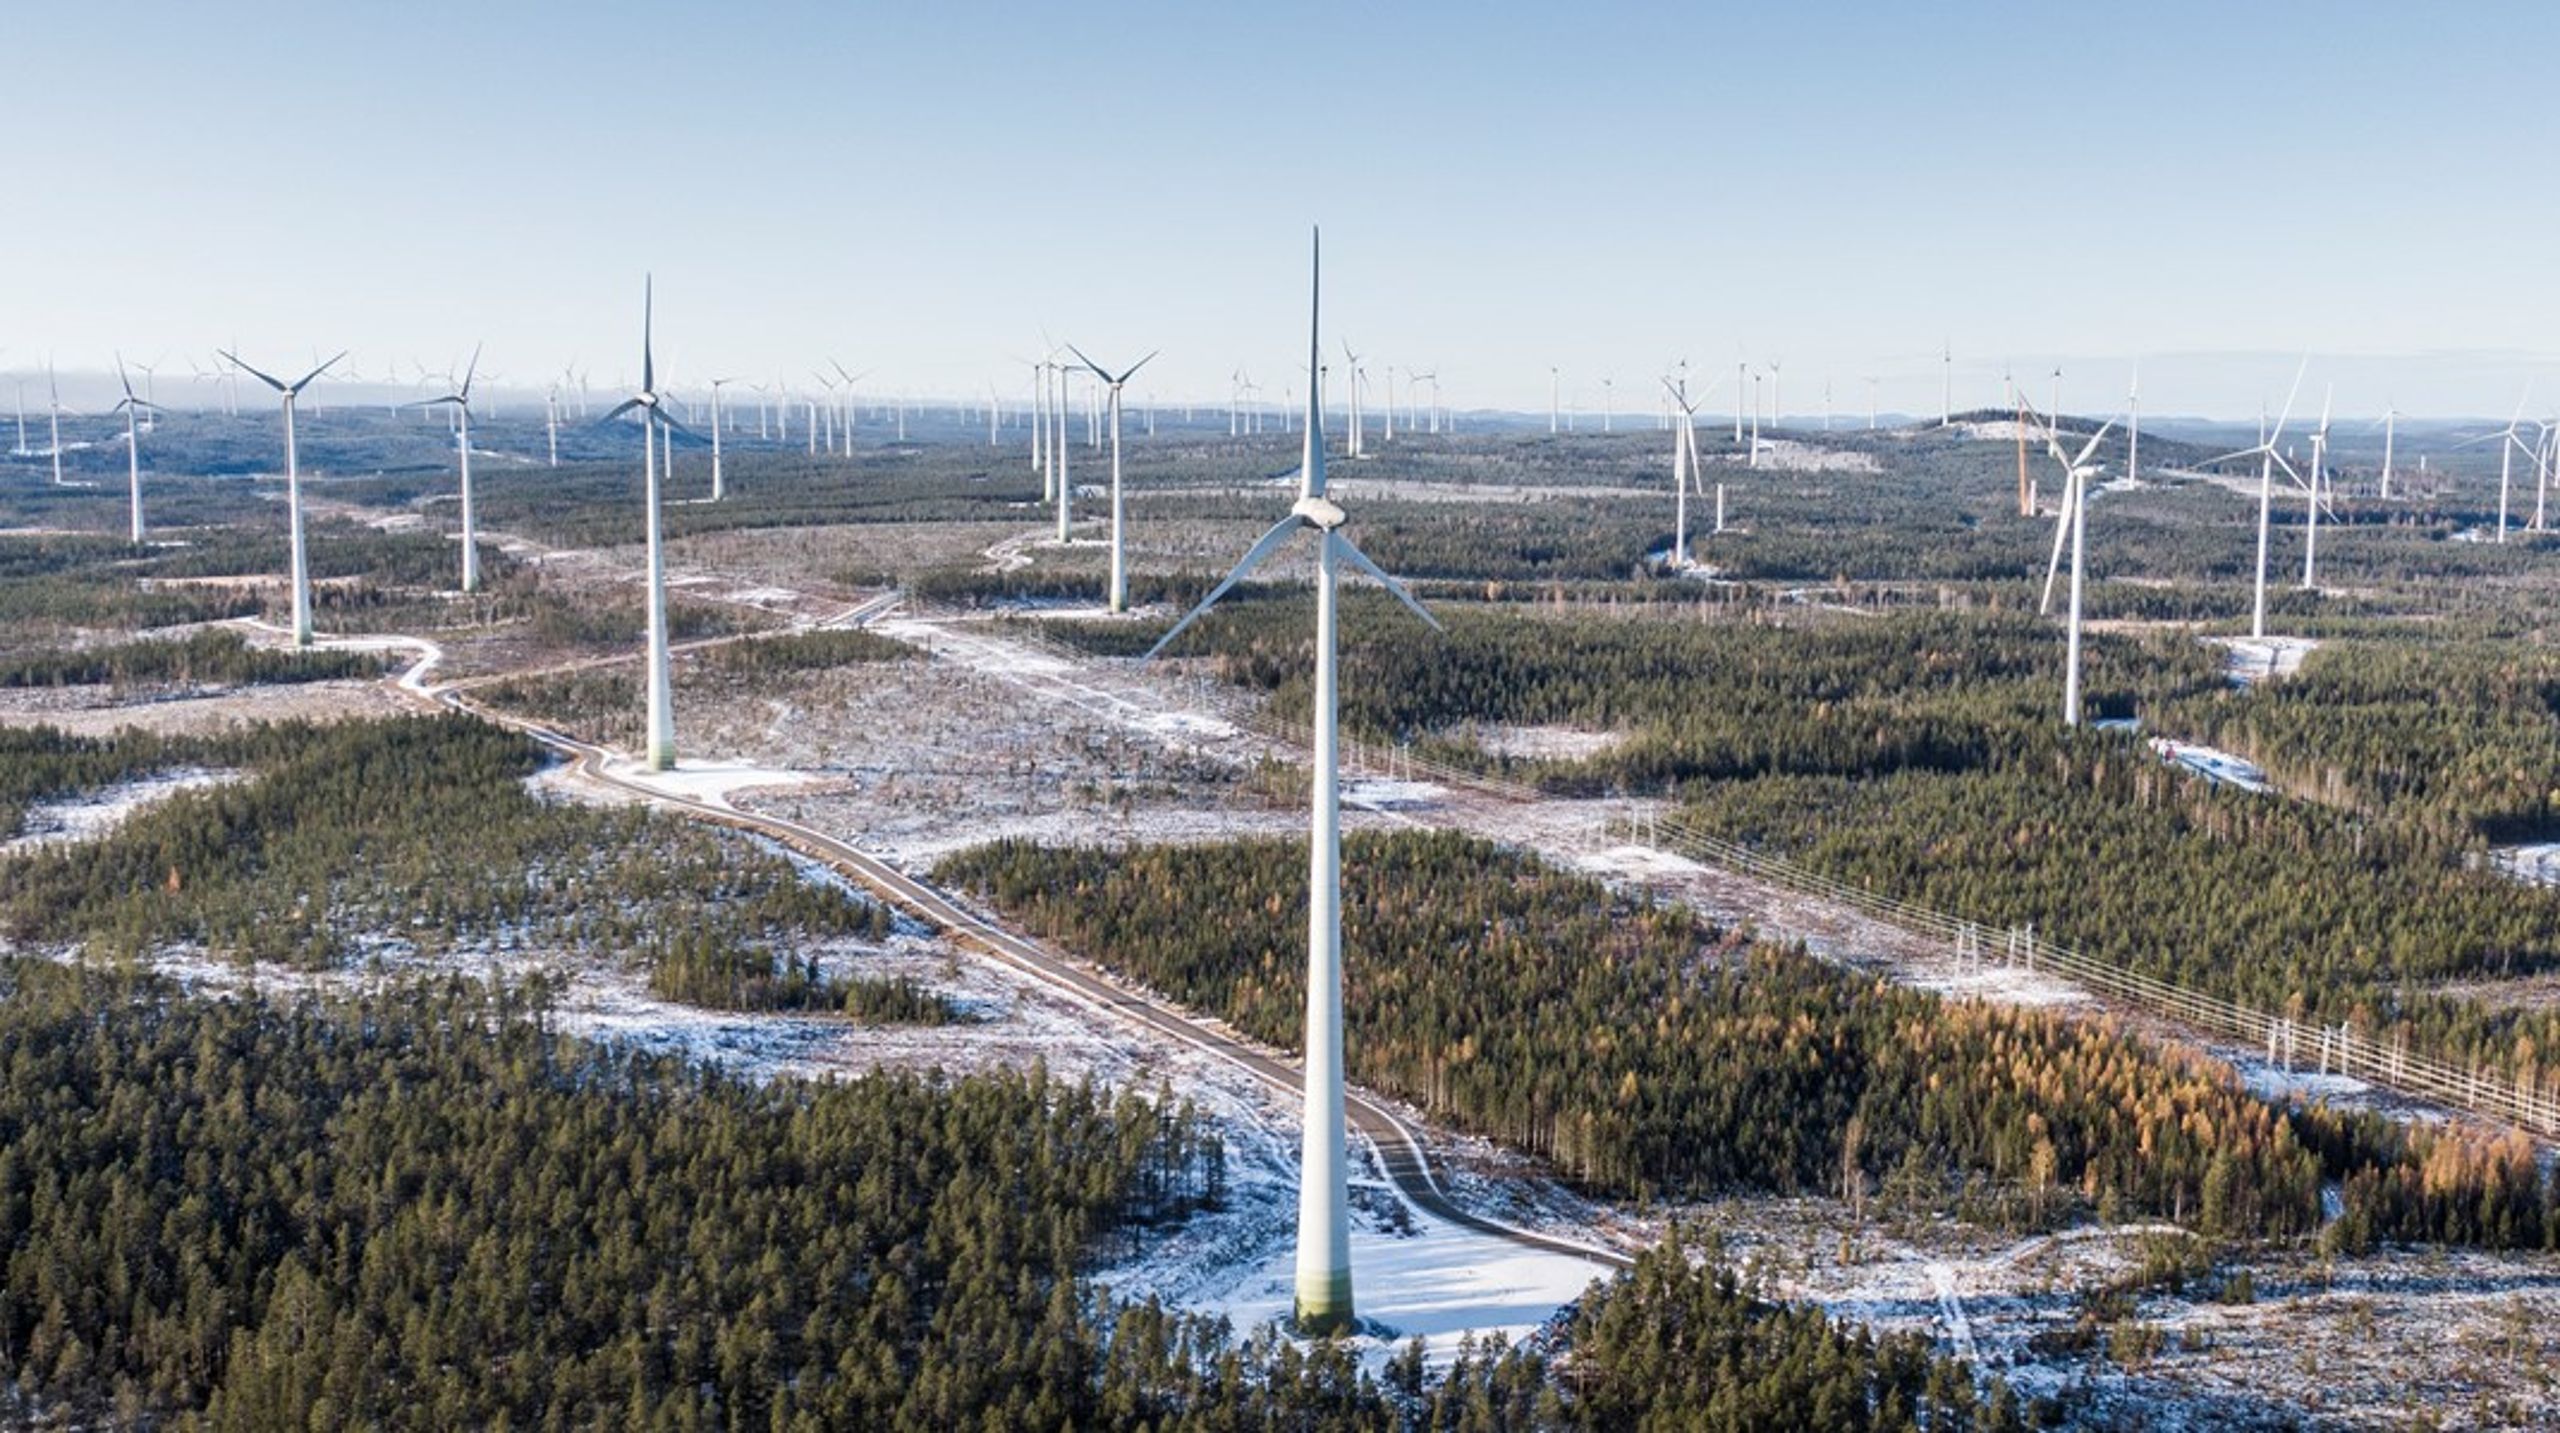 Sverige behöver&nbsp;stärka sin säkerhet genom egen hållbar produktion, skriver debattörerna.